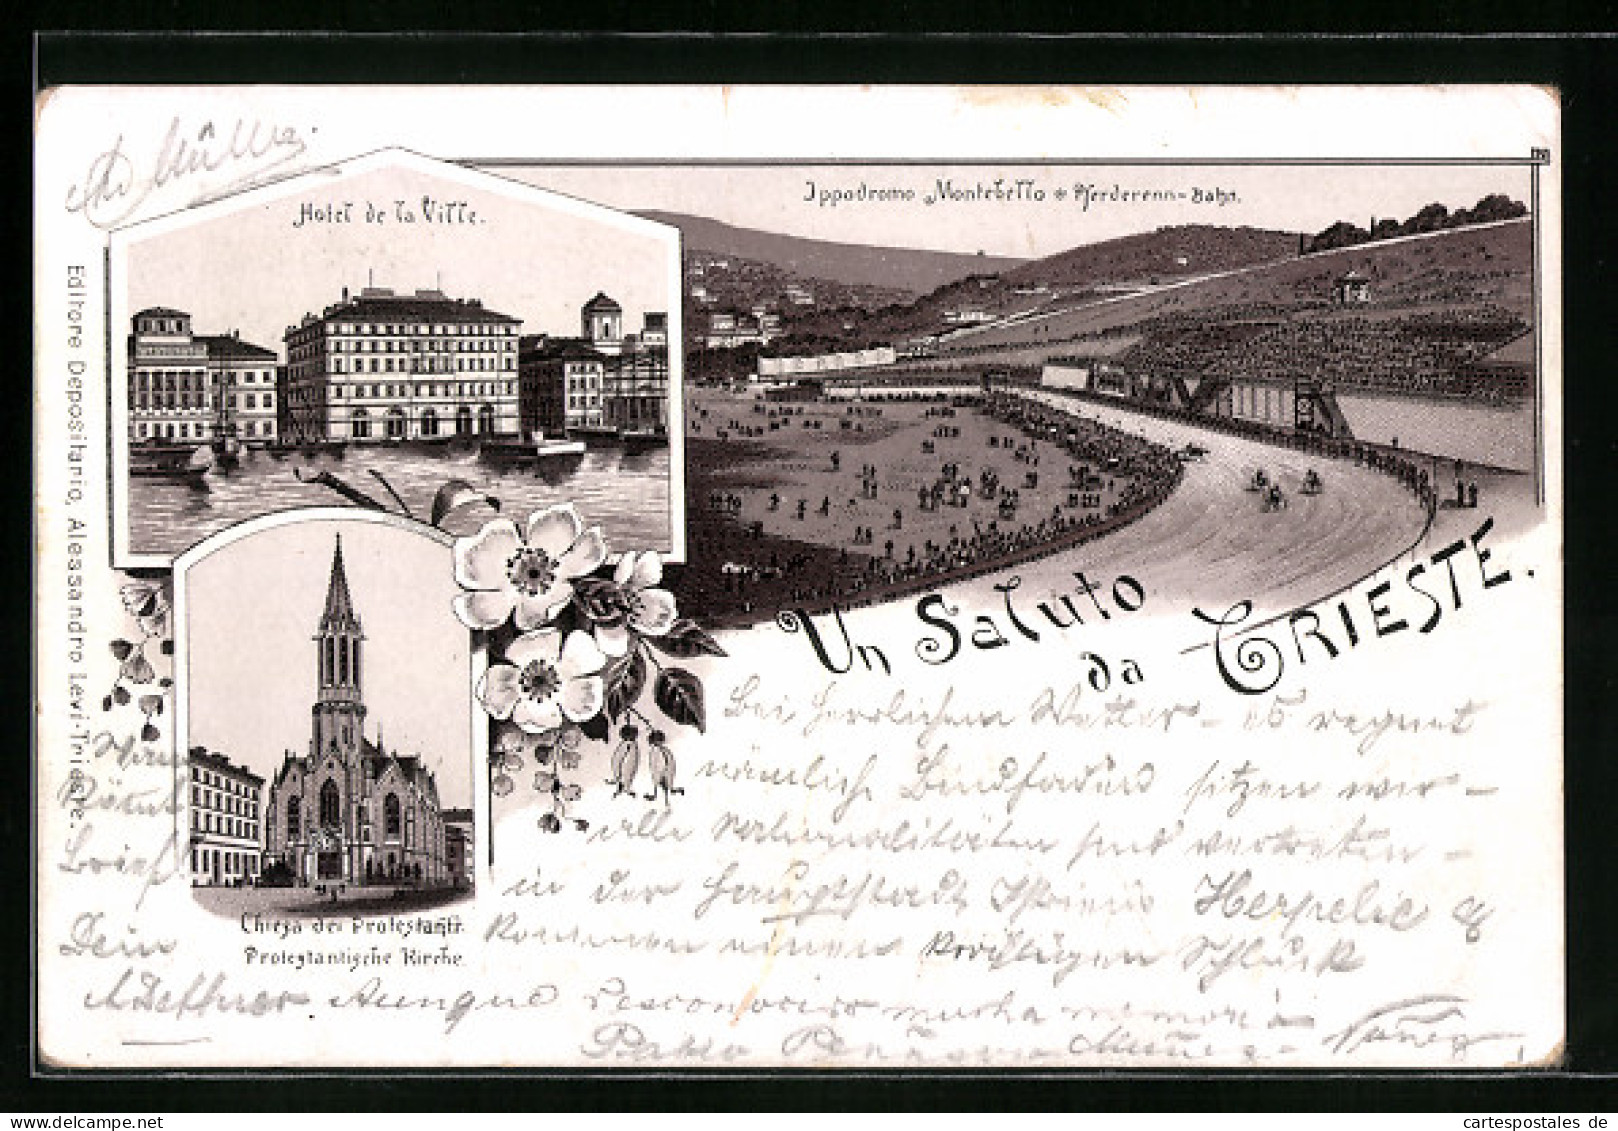 Avanti Di 1895-Lithographie Trieste, Hotel De La Ville, Pferderenn-Bahn, Protestantische Kirche 1895  - Trieste